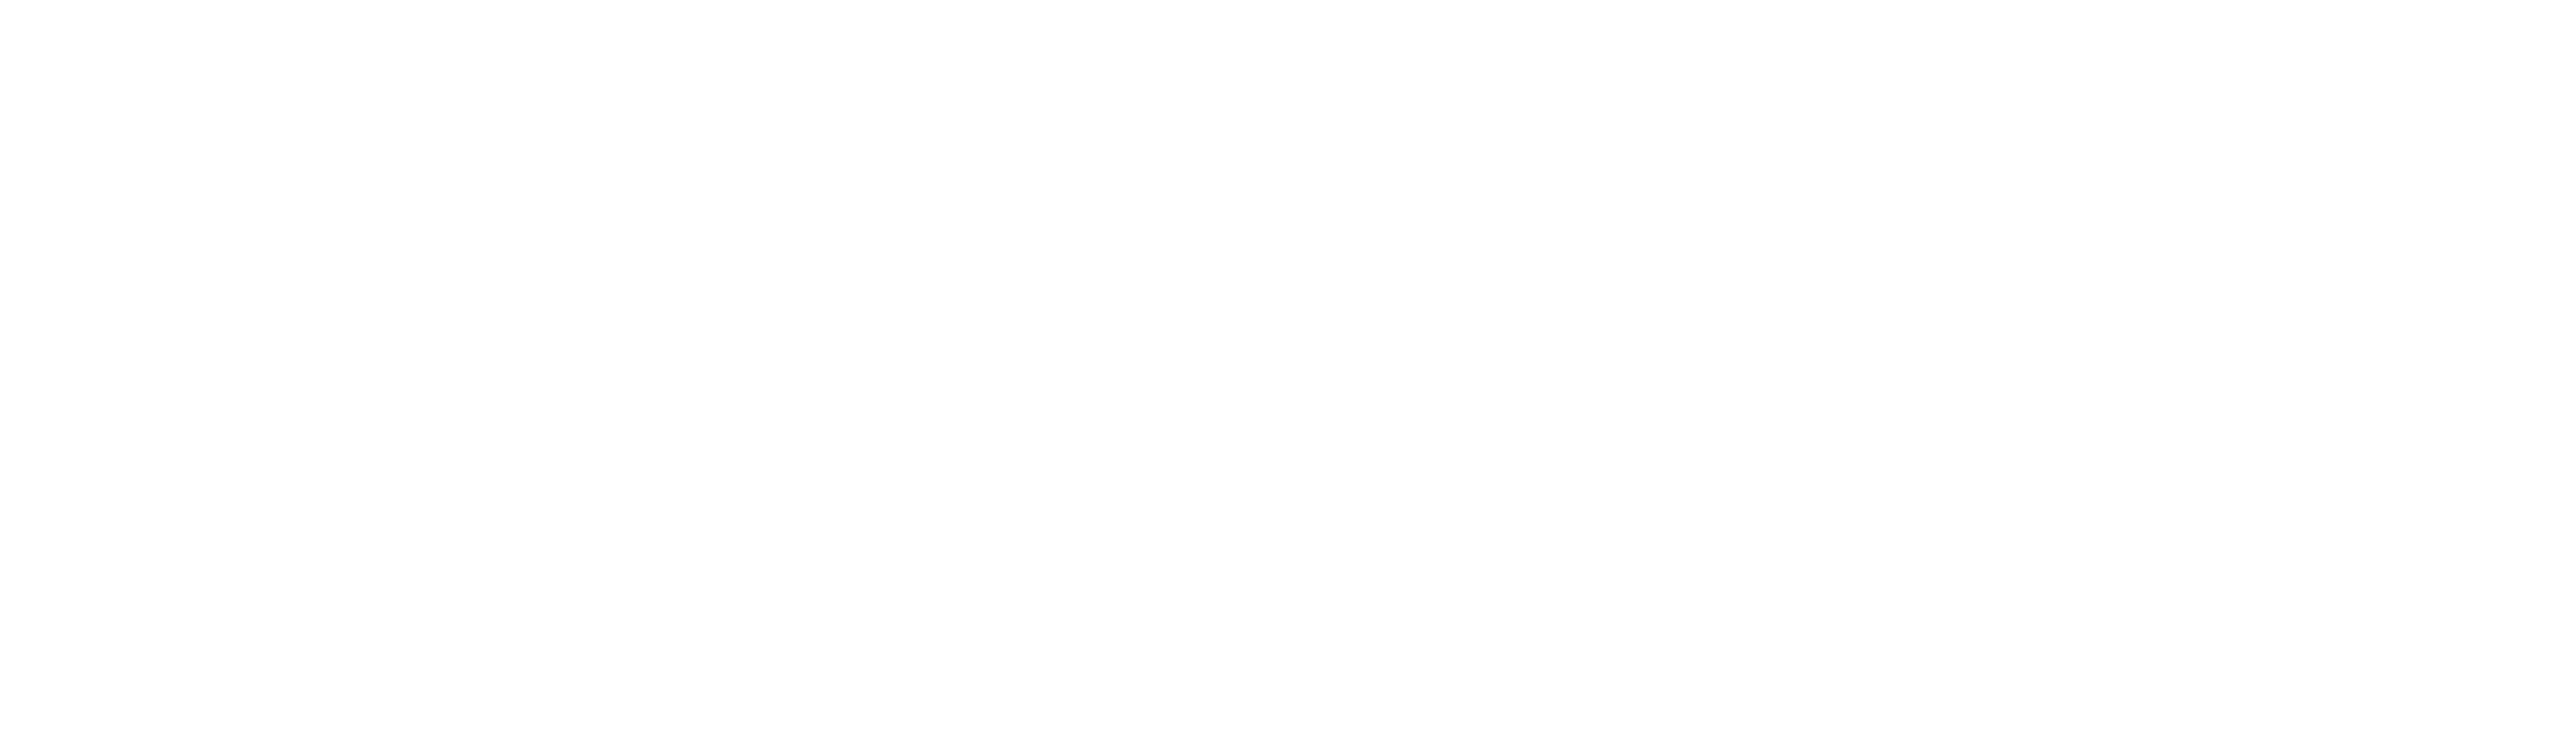 Servicios legales en Guatemala